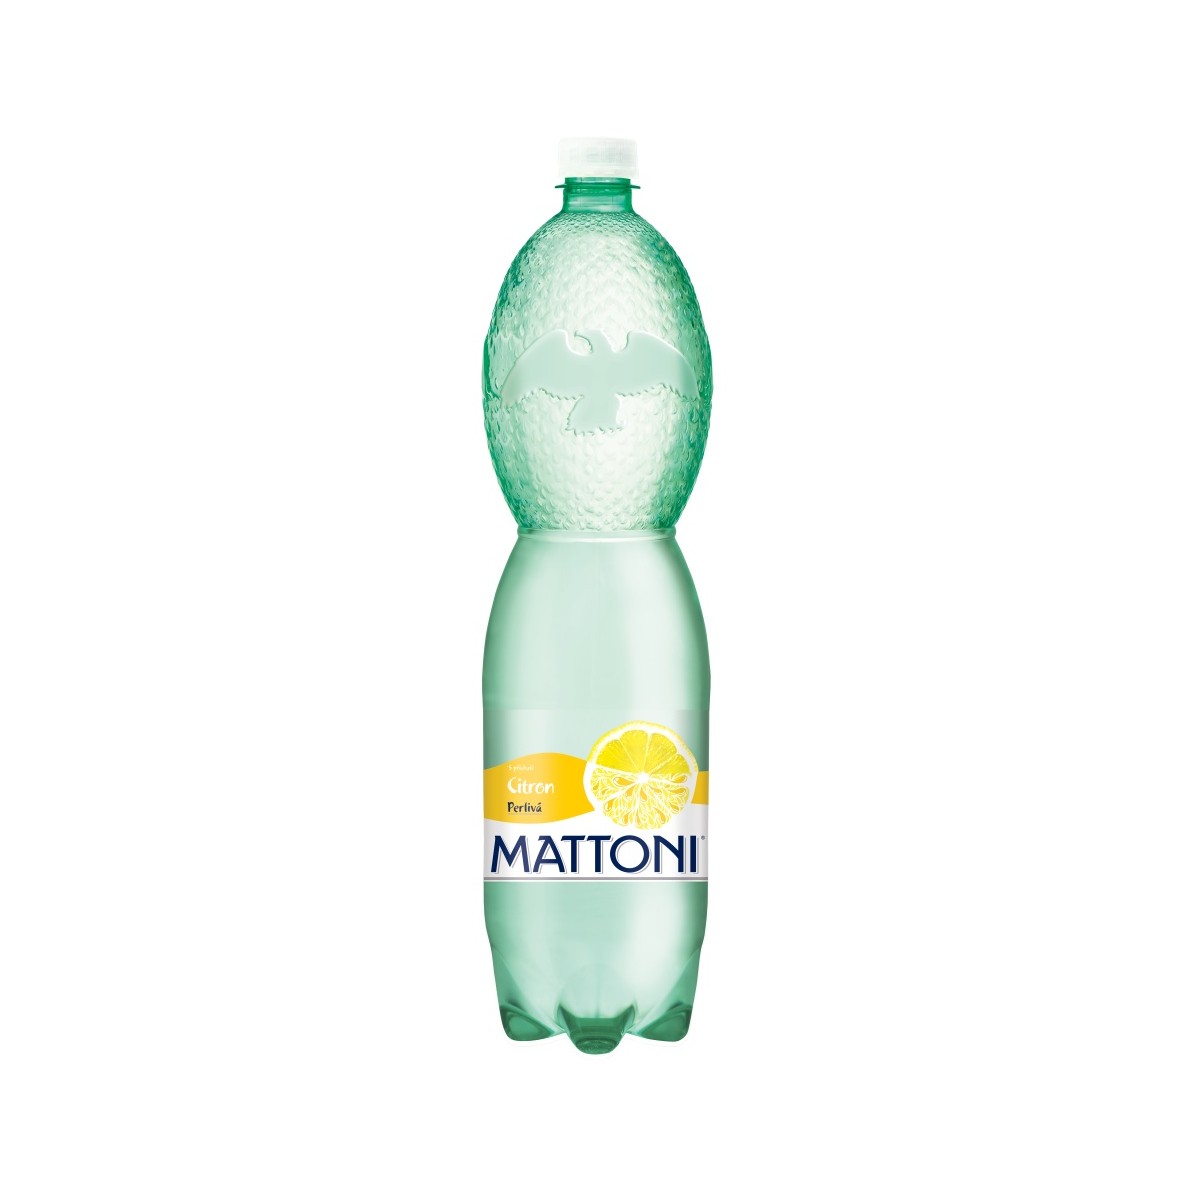 Mattoni citron 1,5l - PET